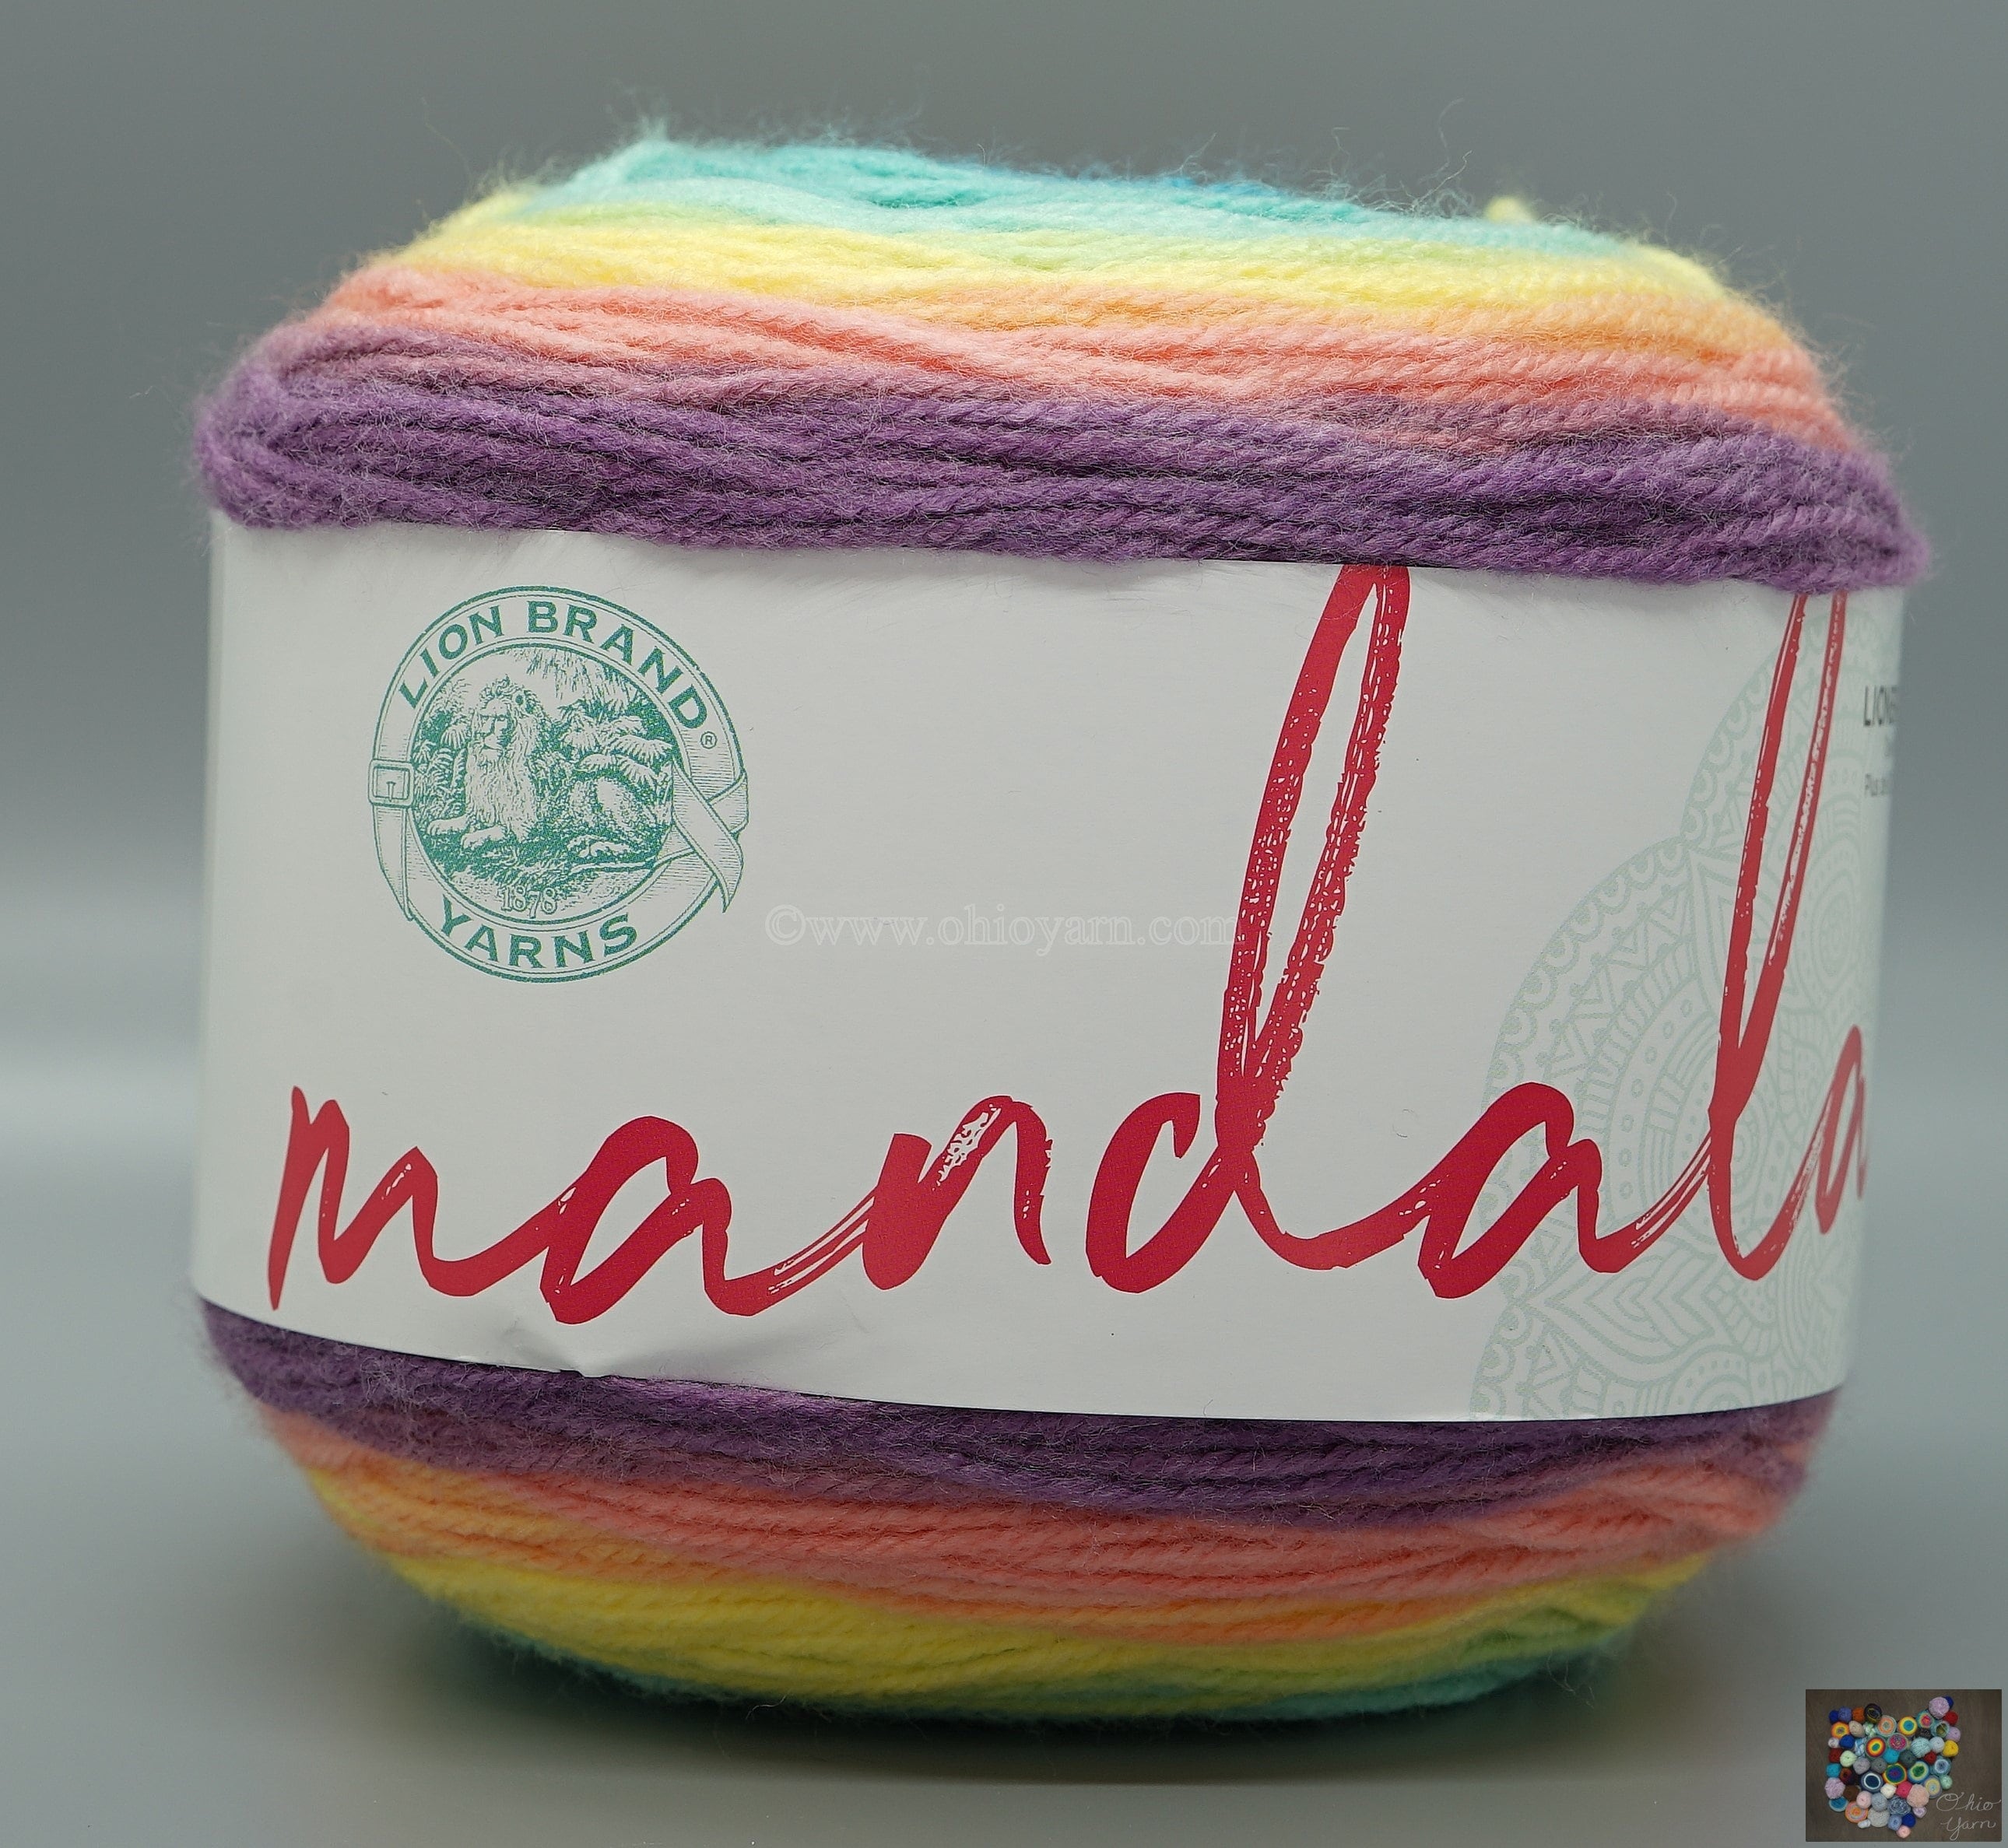 Lion Brand Mandala 217 Genie Yarn -  Israel